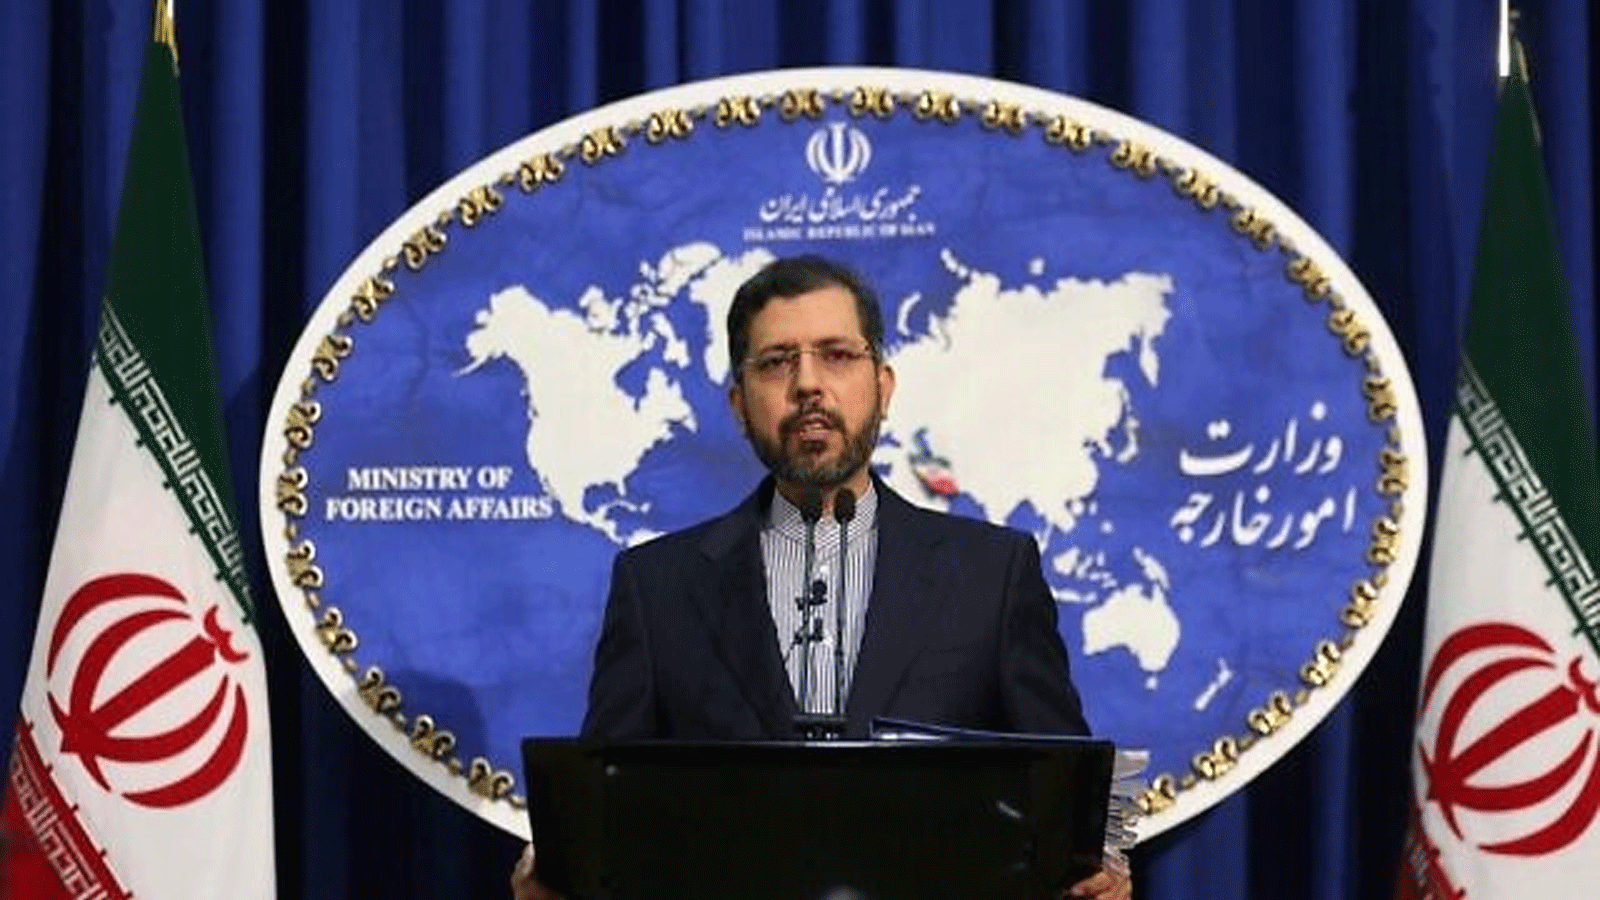 المتحدث باسم الخارجية الإيرانية سعيد خطيب زاده خلال مؤتمر صحفي في طهران 